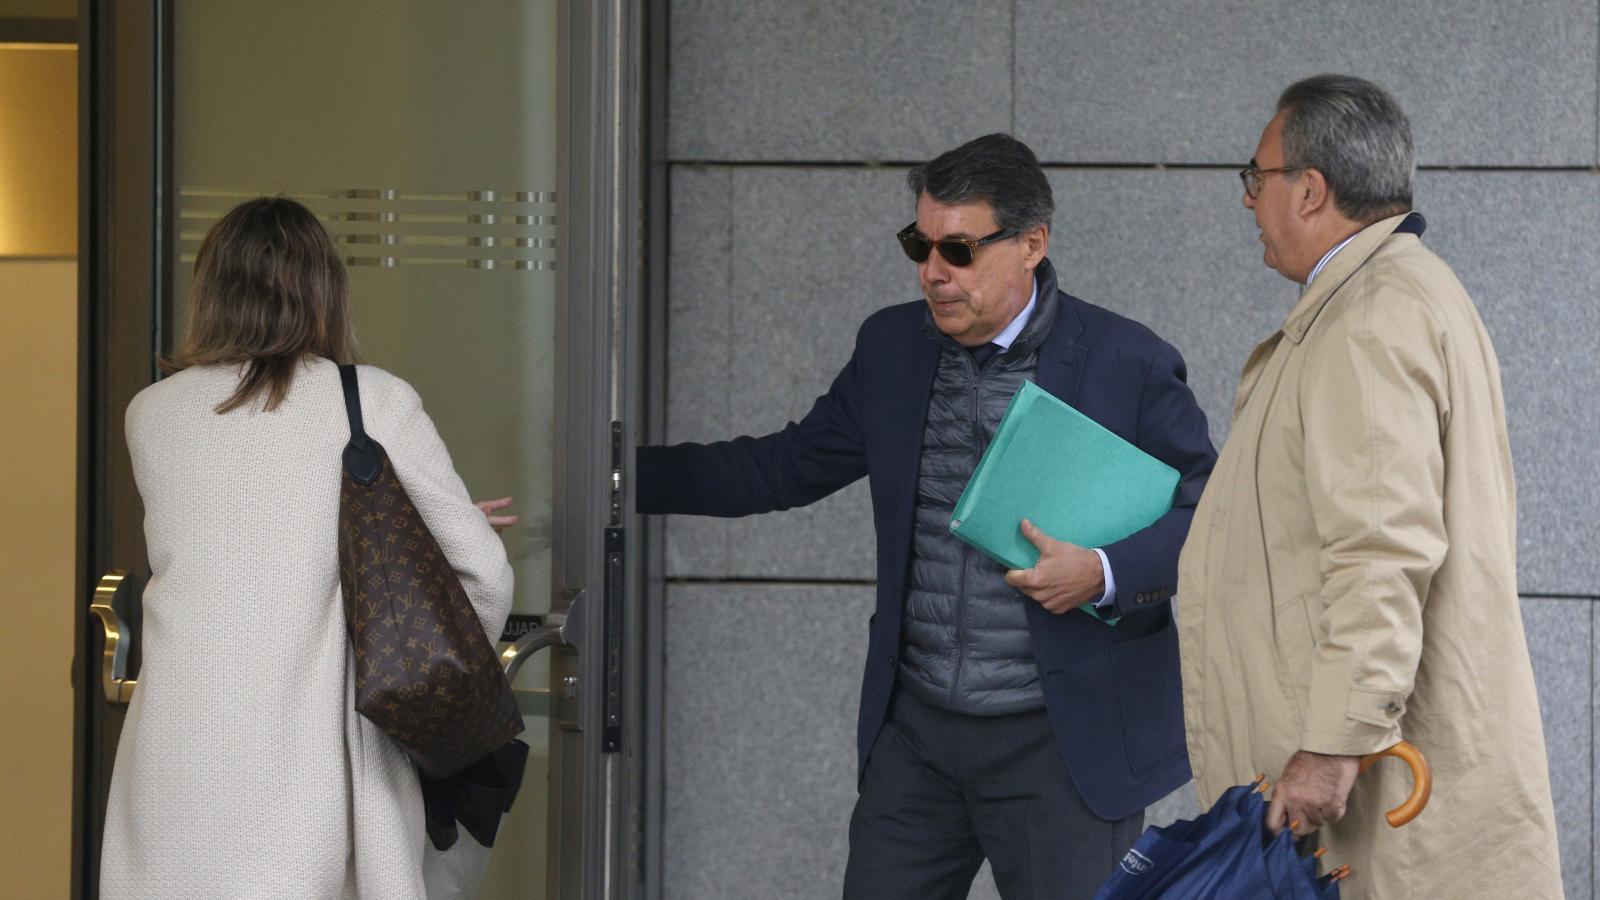 La Audiencia avala el fin de la investigación por blanqueo a Ignacio González